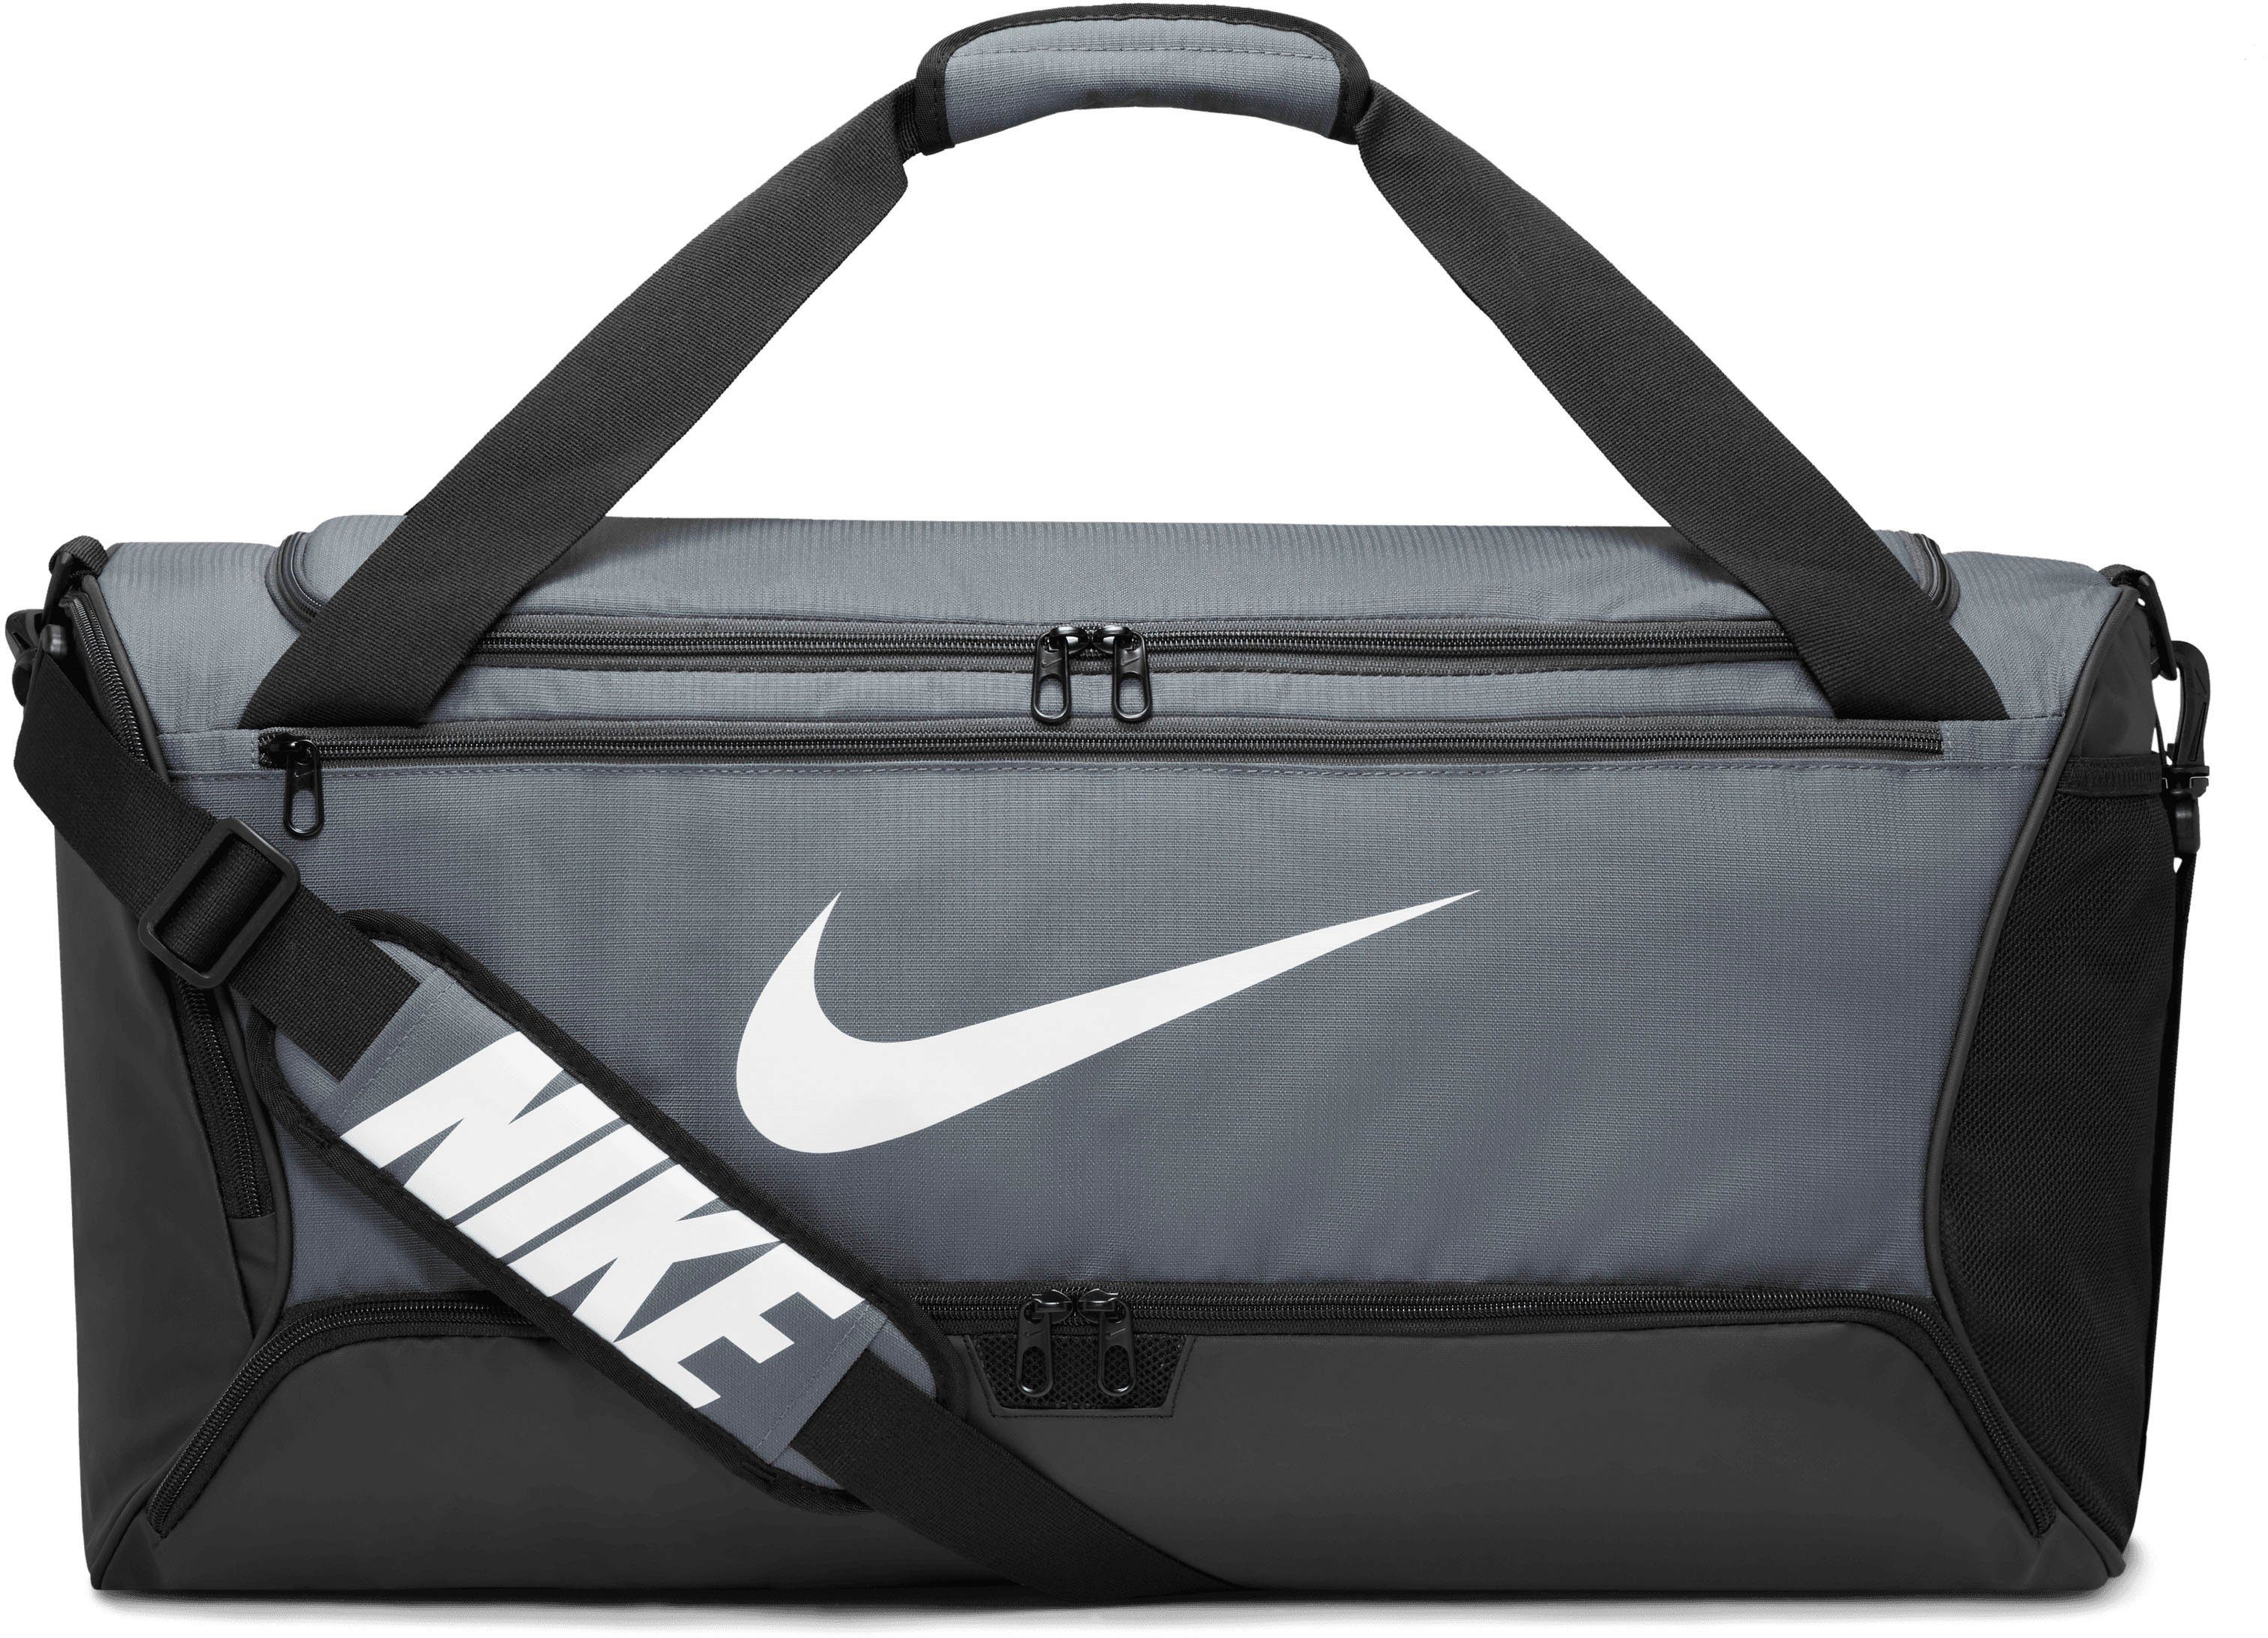 Nike Damen Sporttaschen online kaufen | OTTO